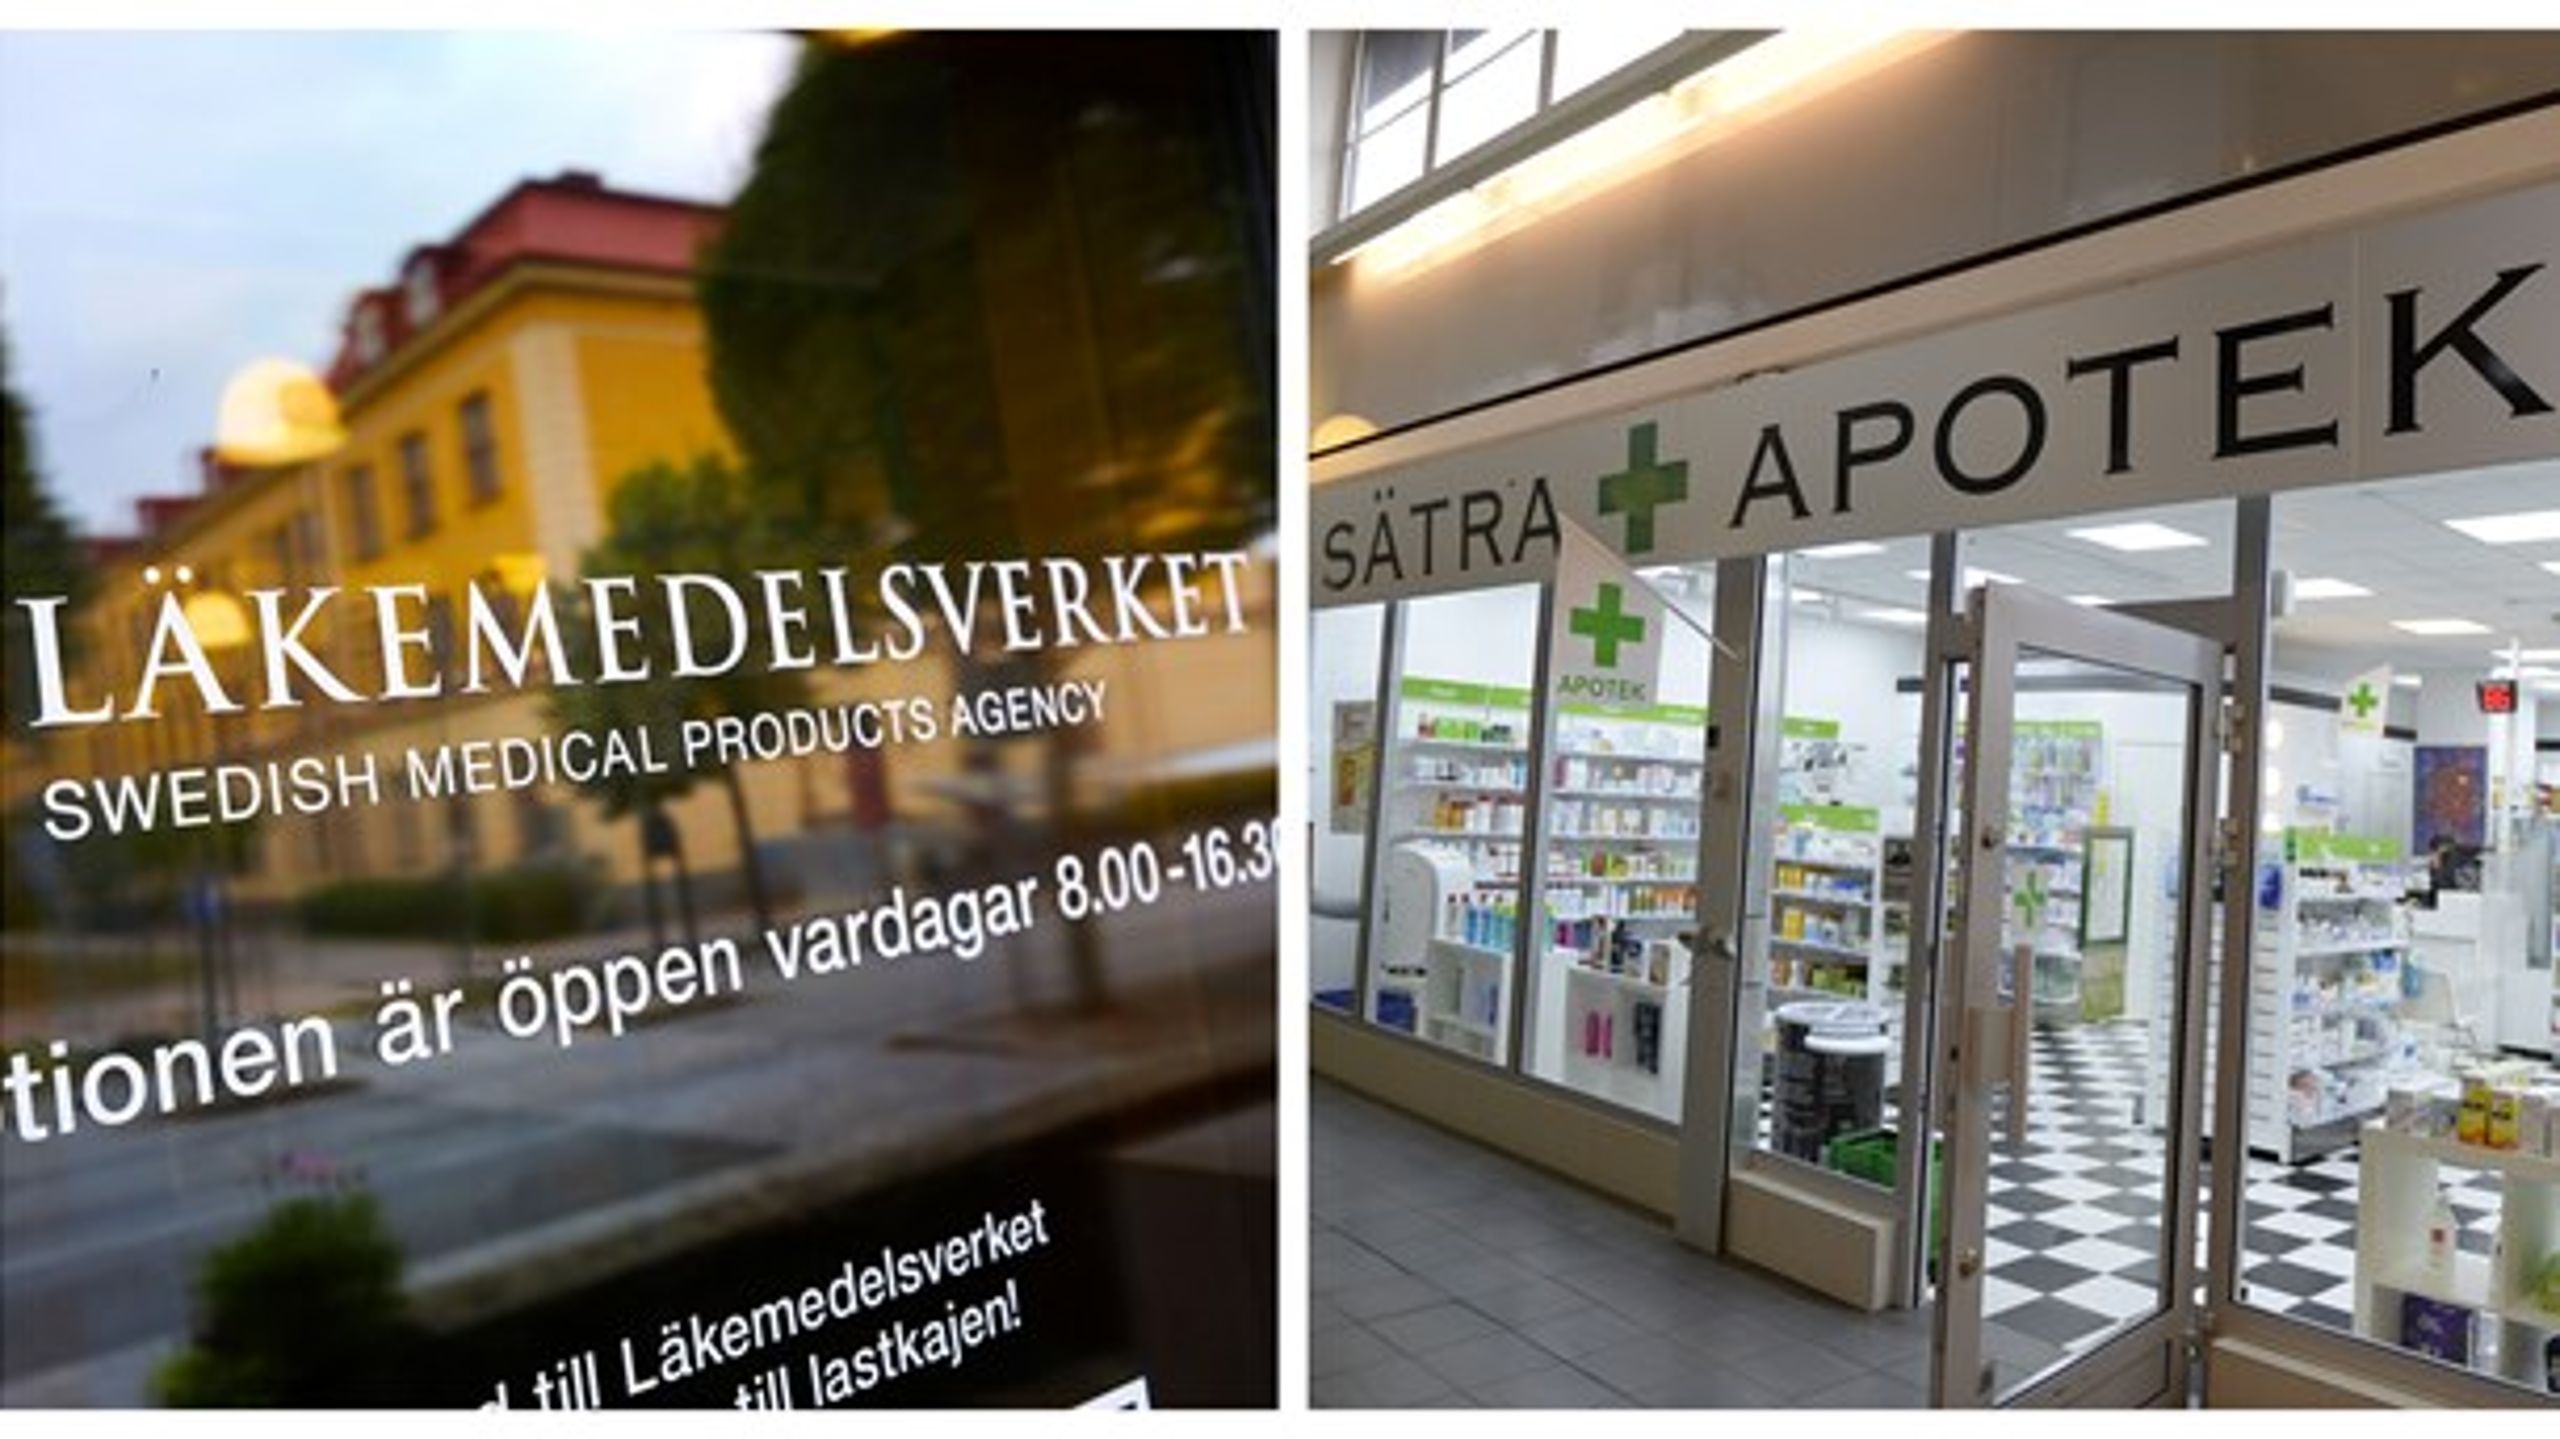 Apoteket i Sätra stängdes 2016, även då sekretessbelade Läkemedelsverket skälen.